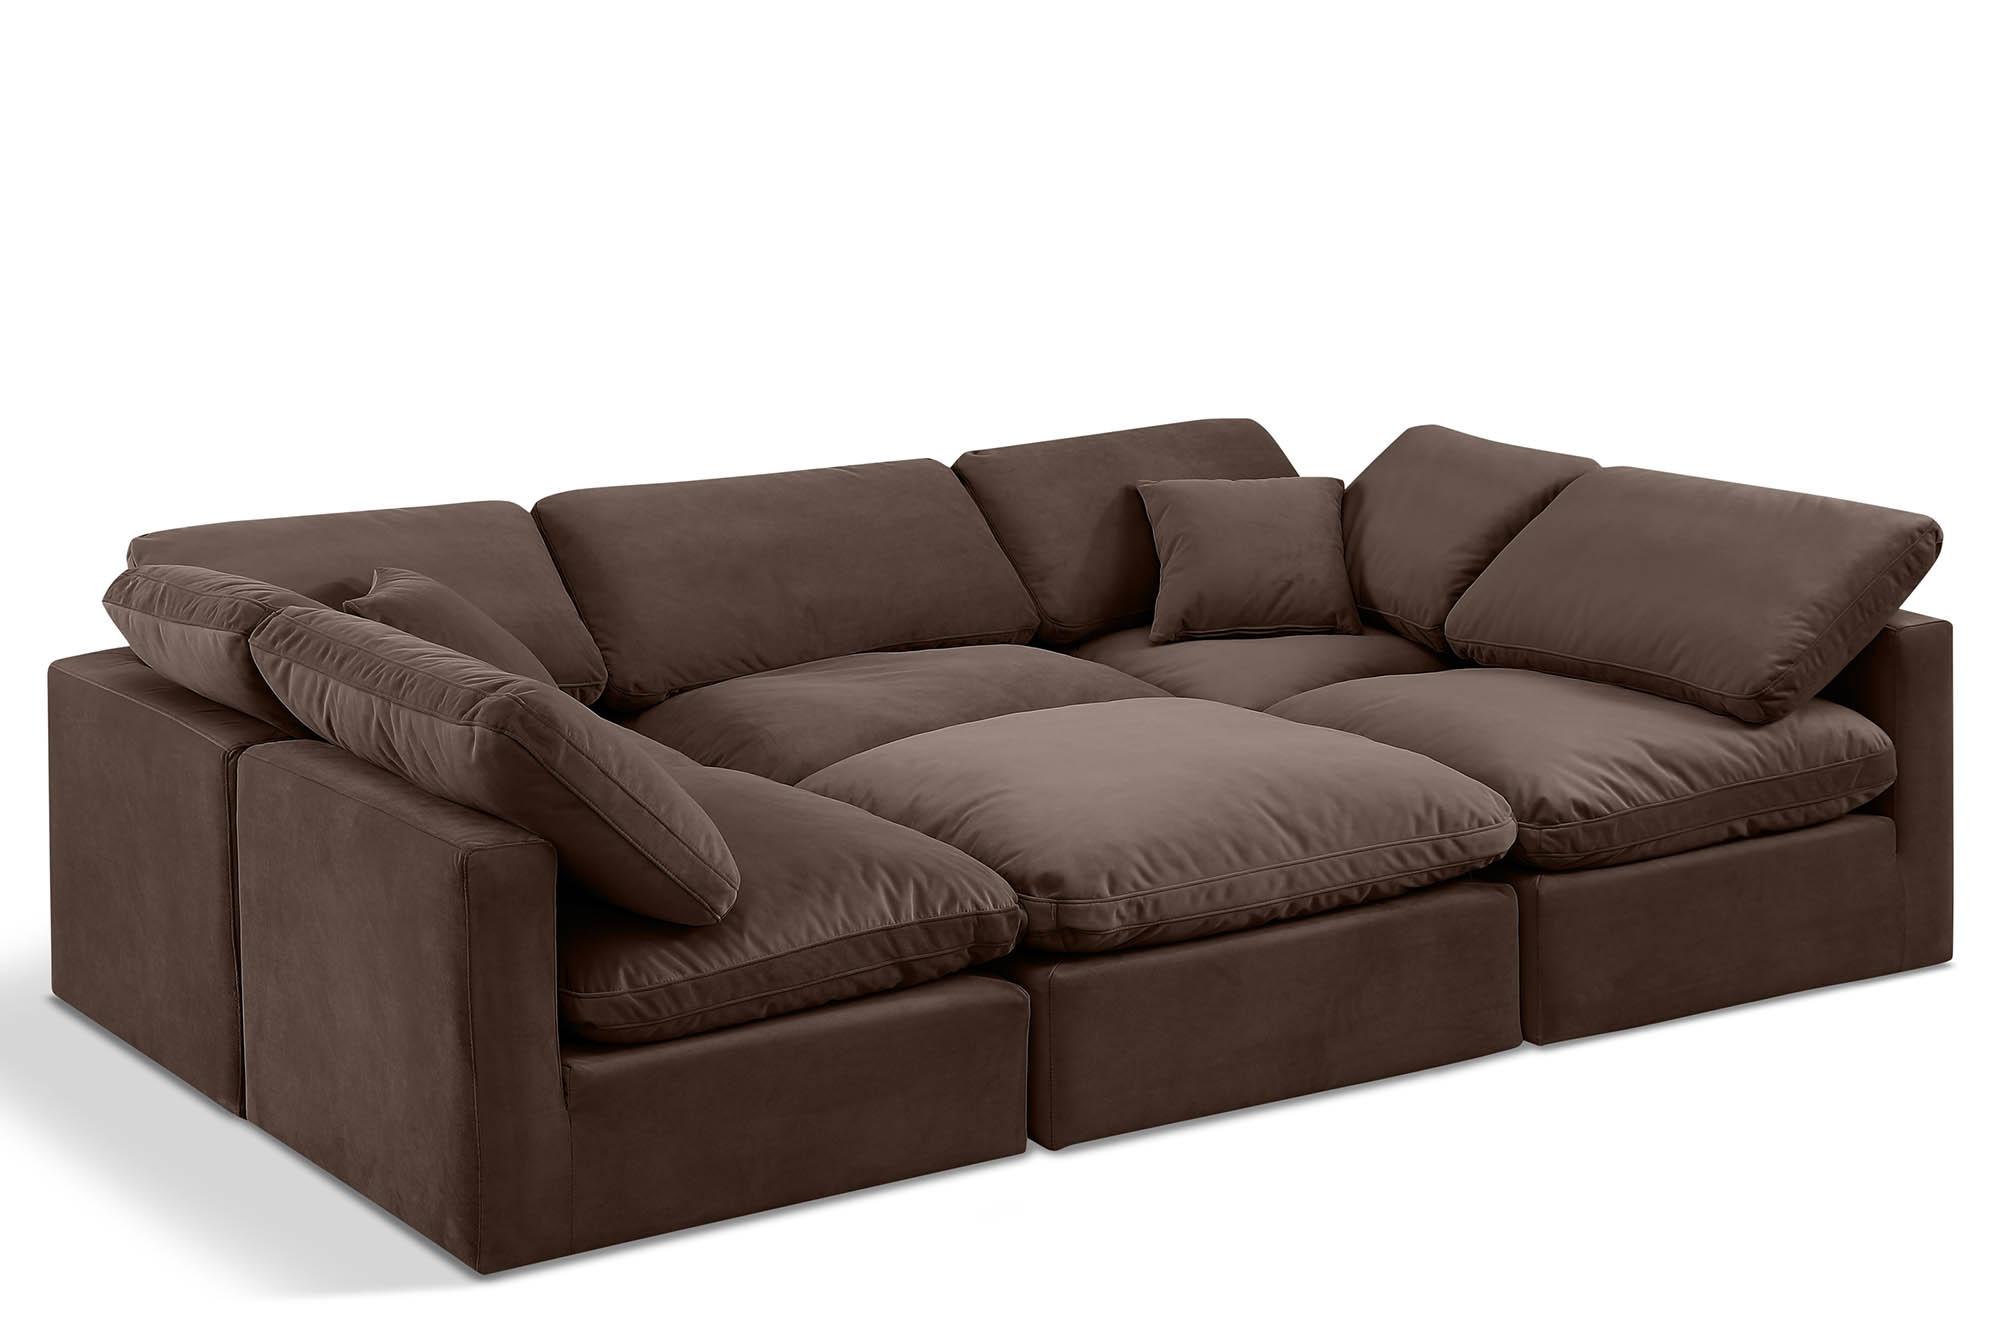 Contemporary, Modern Modular Sectional Sofa INDULGE 147Brown-Sec6C 147Brown-Sec6C in Brown Velvet